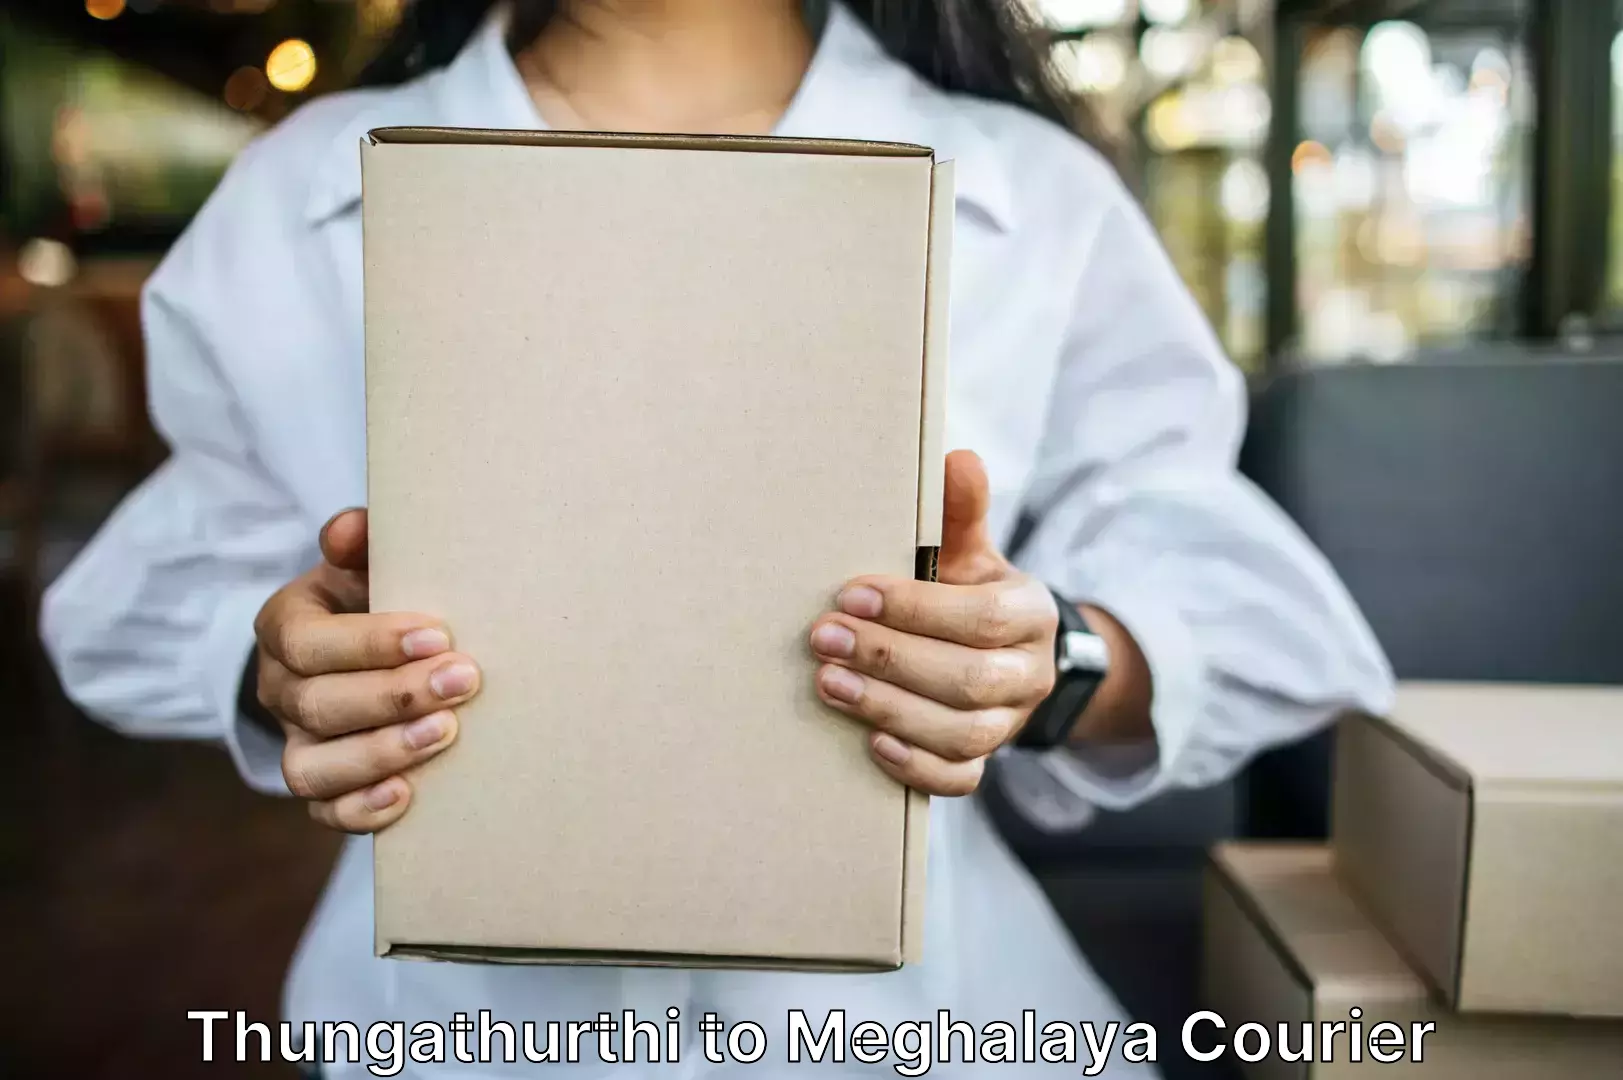 Baggage courier optimization Thungathurthi to Meghalaya